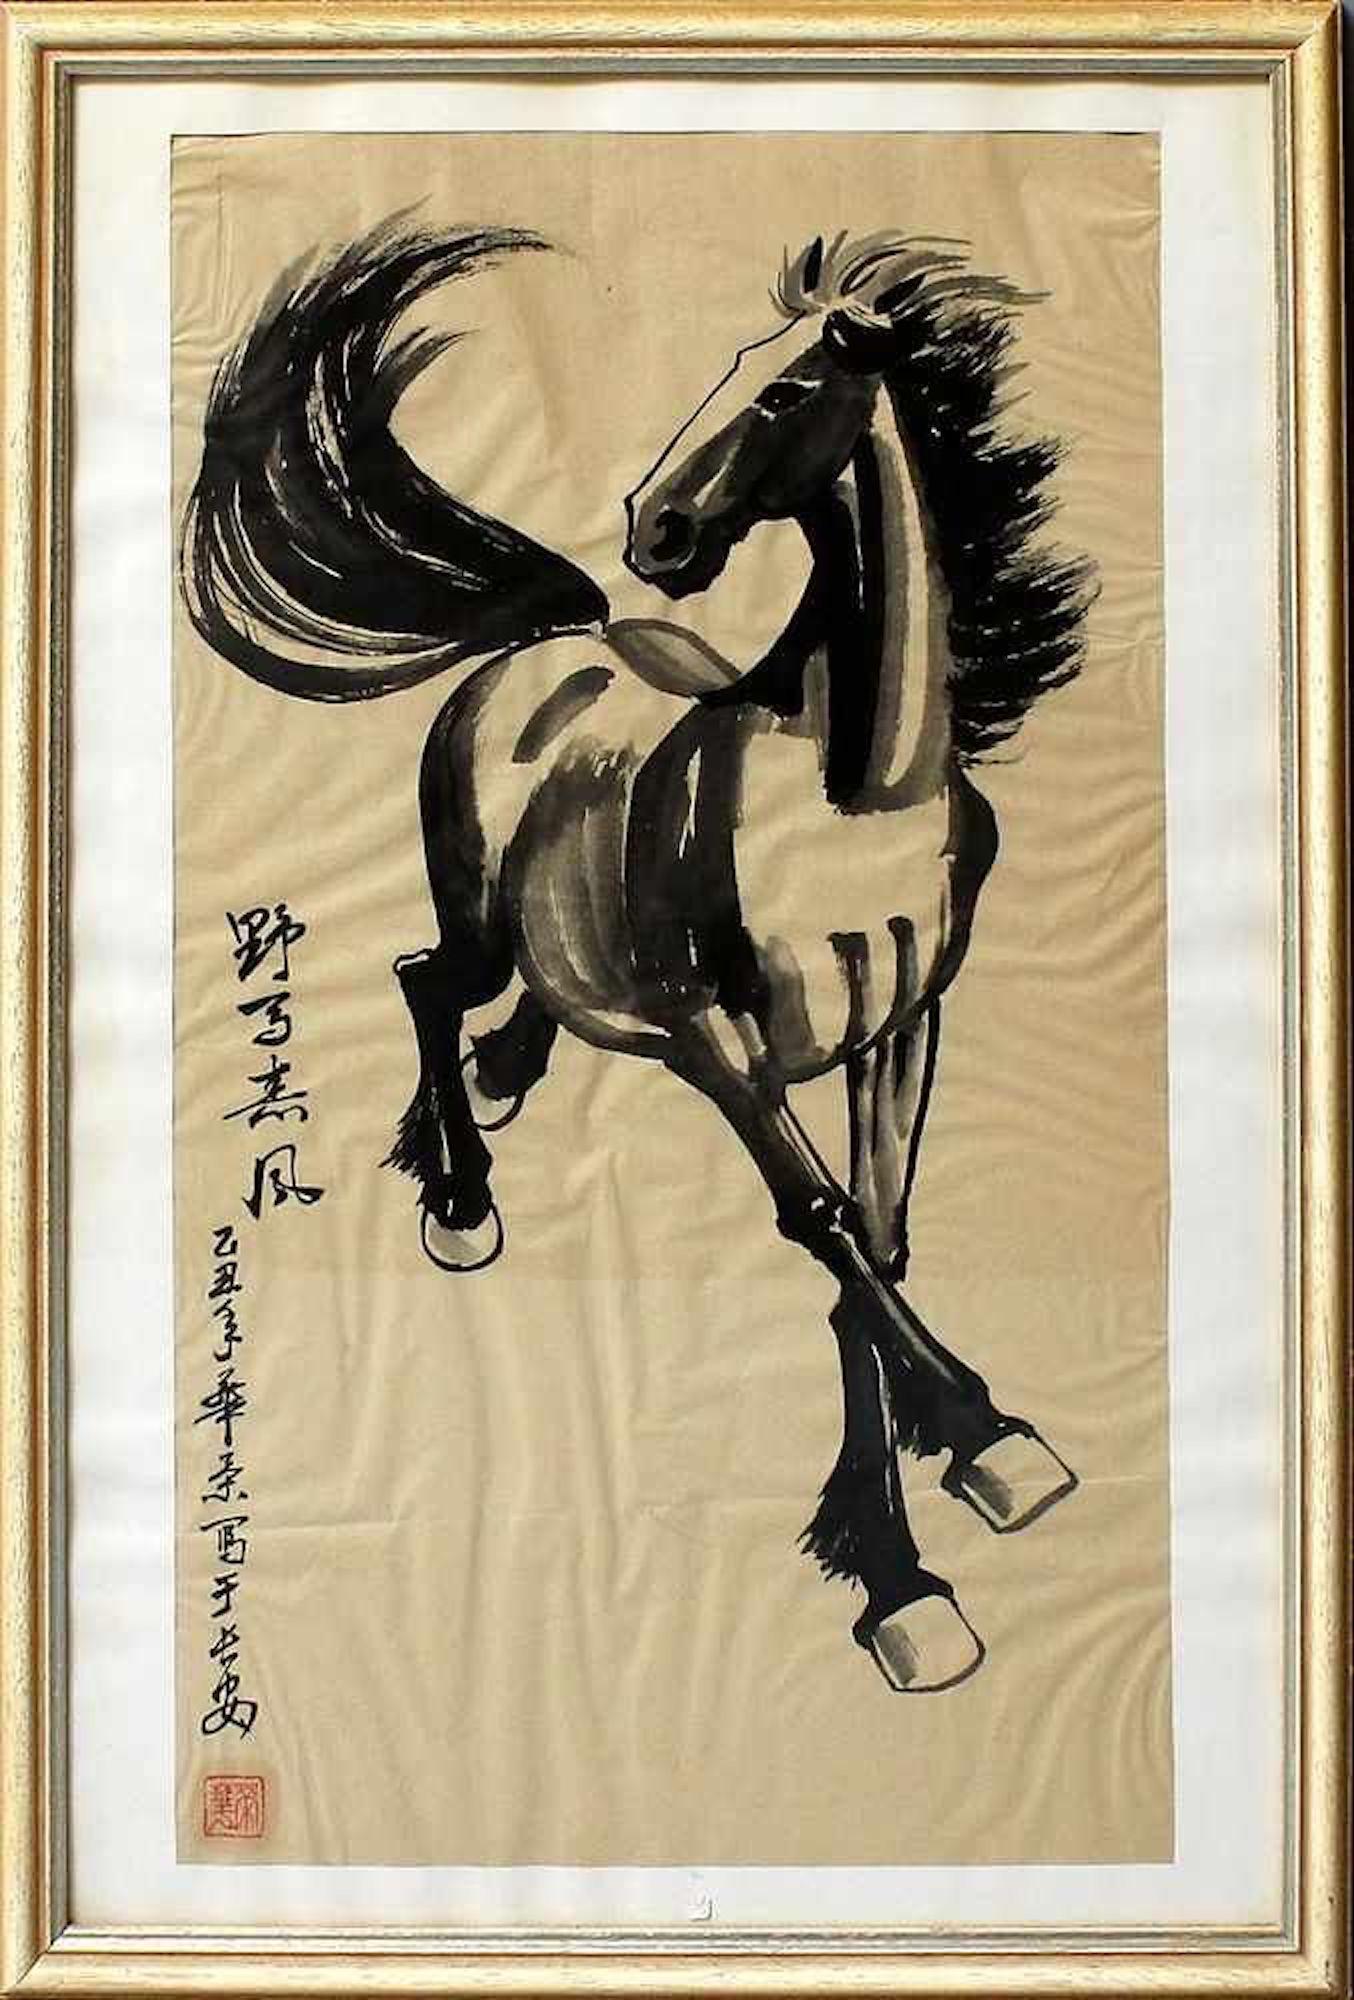 Unknown Animal Art – Schwarzes Pferd – Chinesische Tinte von chinesischer Meister, frühes 20. Jahrhundert